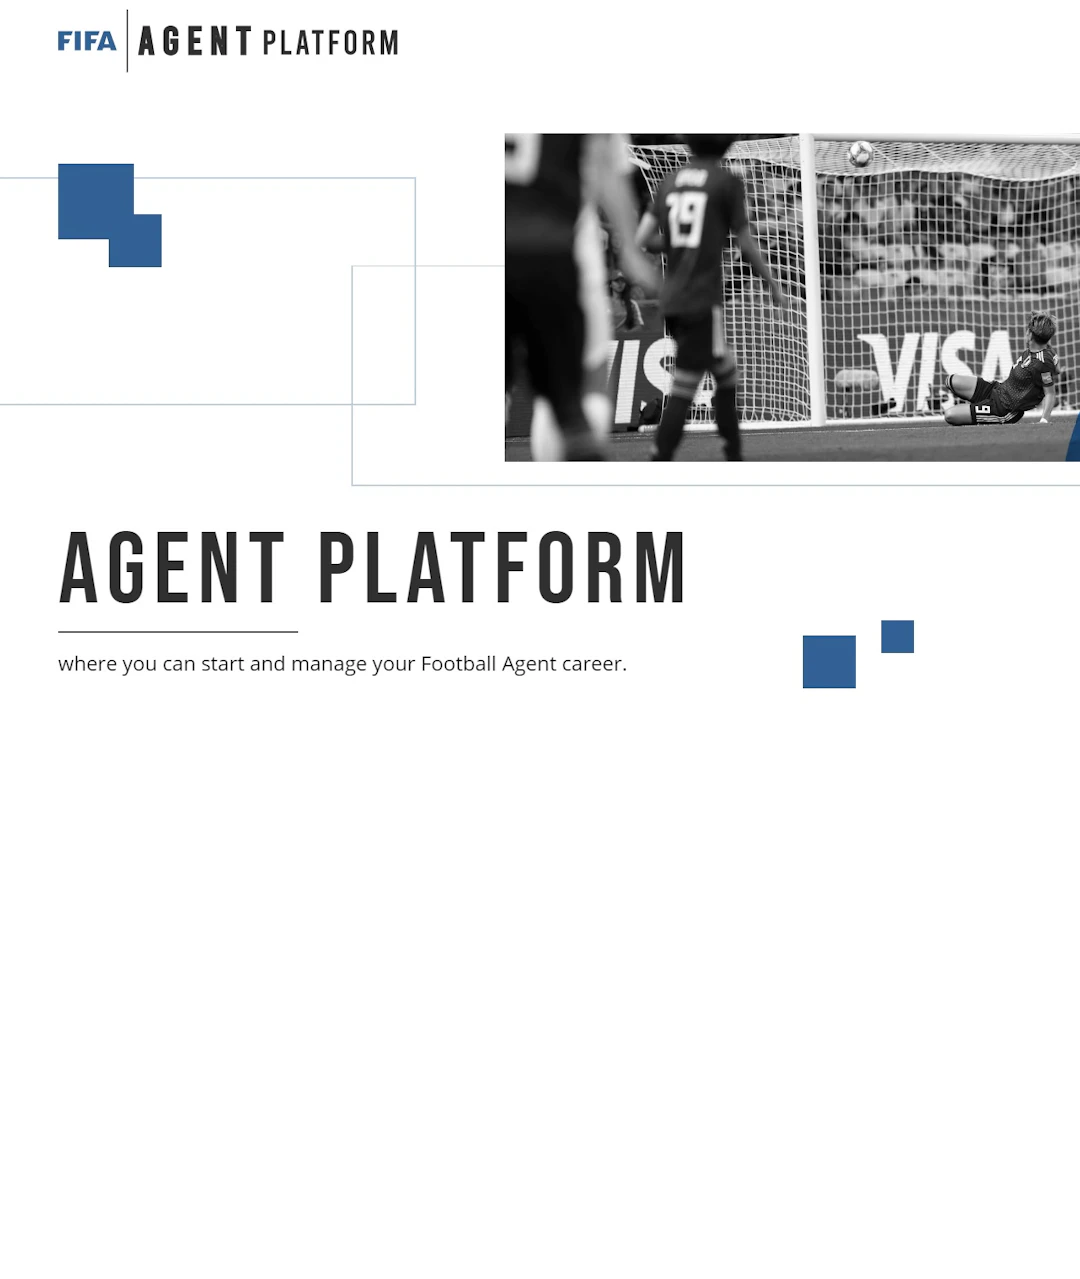 FIFAn julkaisema uusi agenttien toiminta-alusta